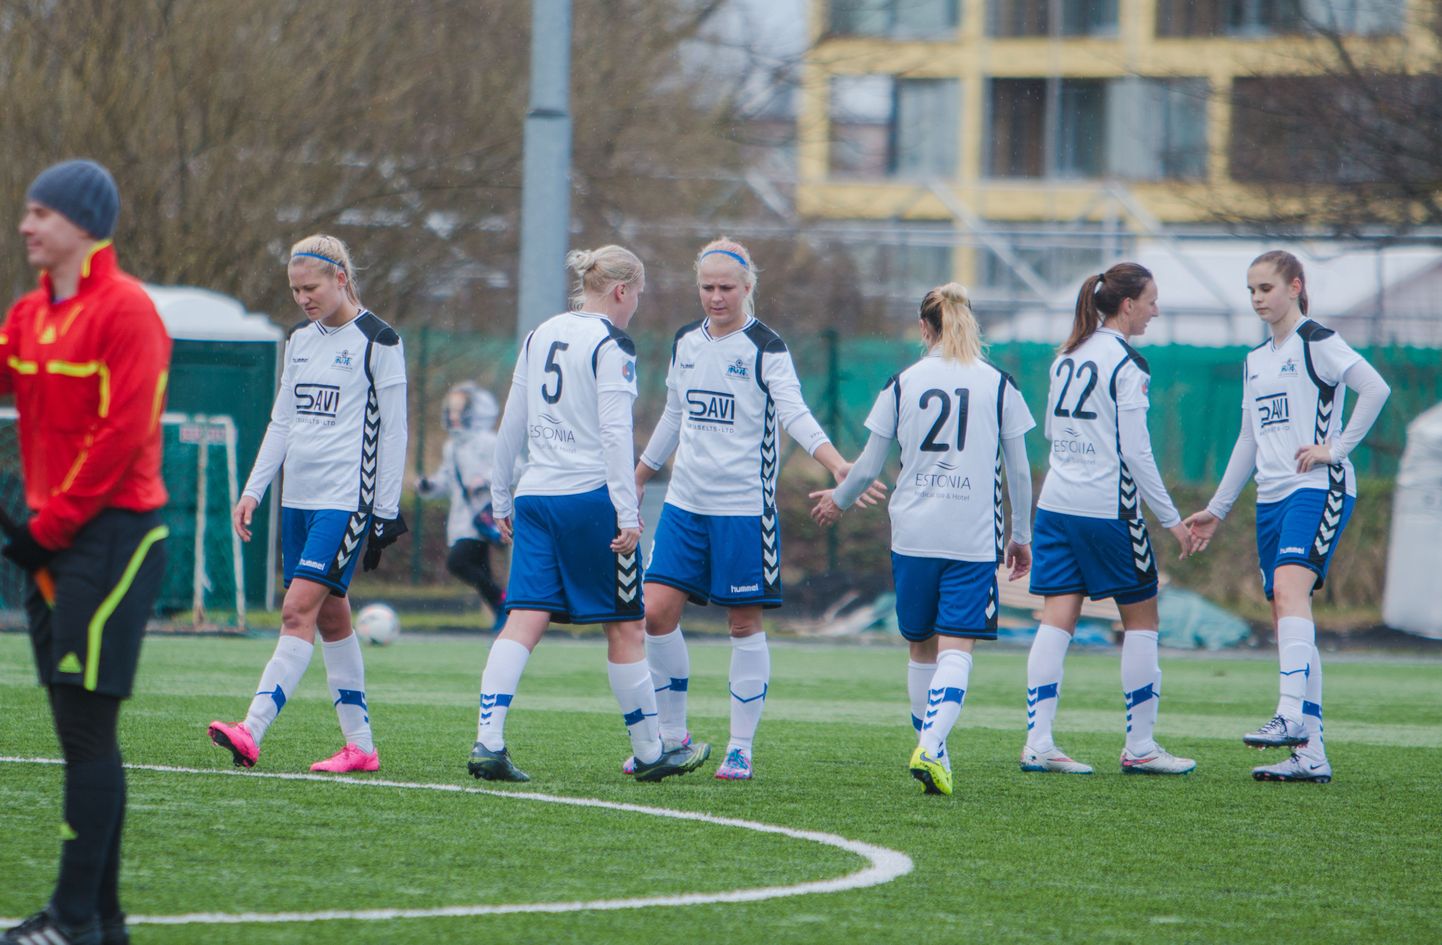 Meistrite liiga kvalifikatsiooniturniir algas Pärnu jalgpalliklubi naiskonnale kurva 1:7 kaotusega Rumeenia meistrile Cluj Olimpiale. Arhiivifoto.